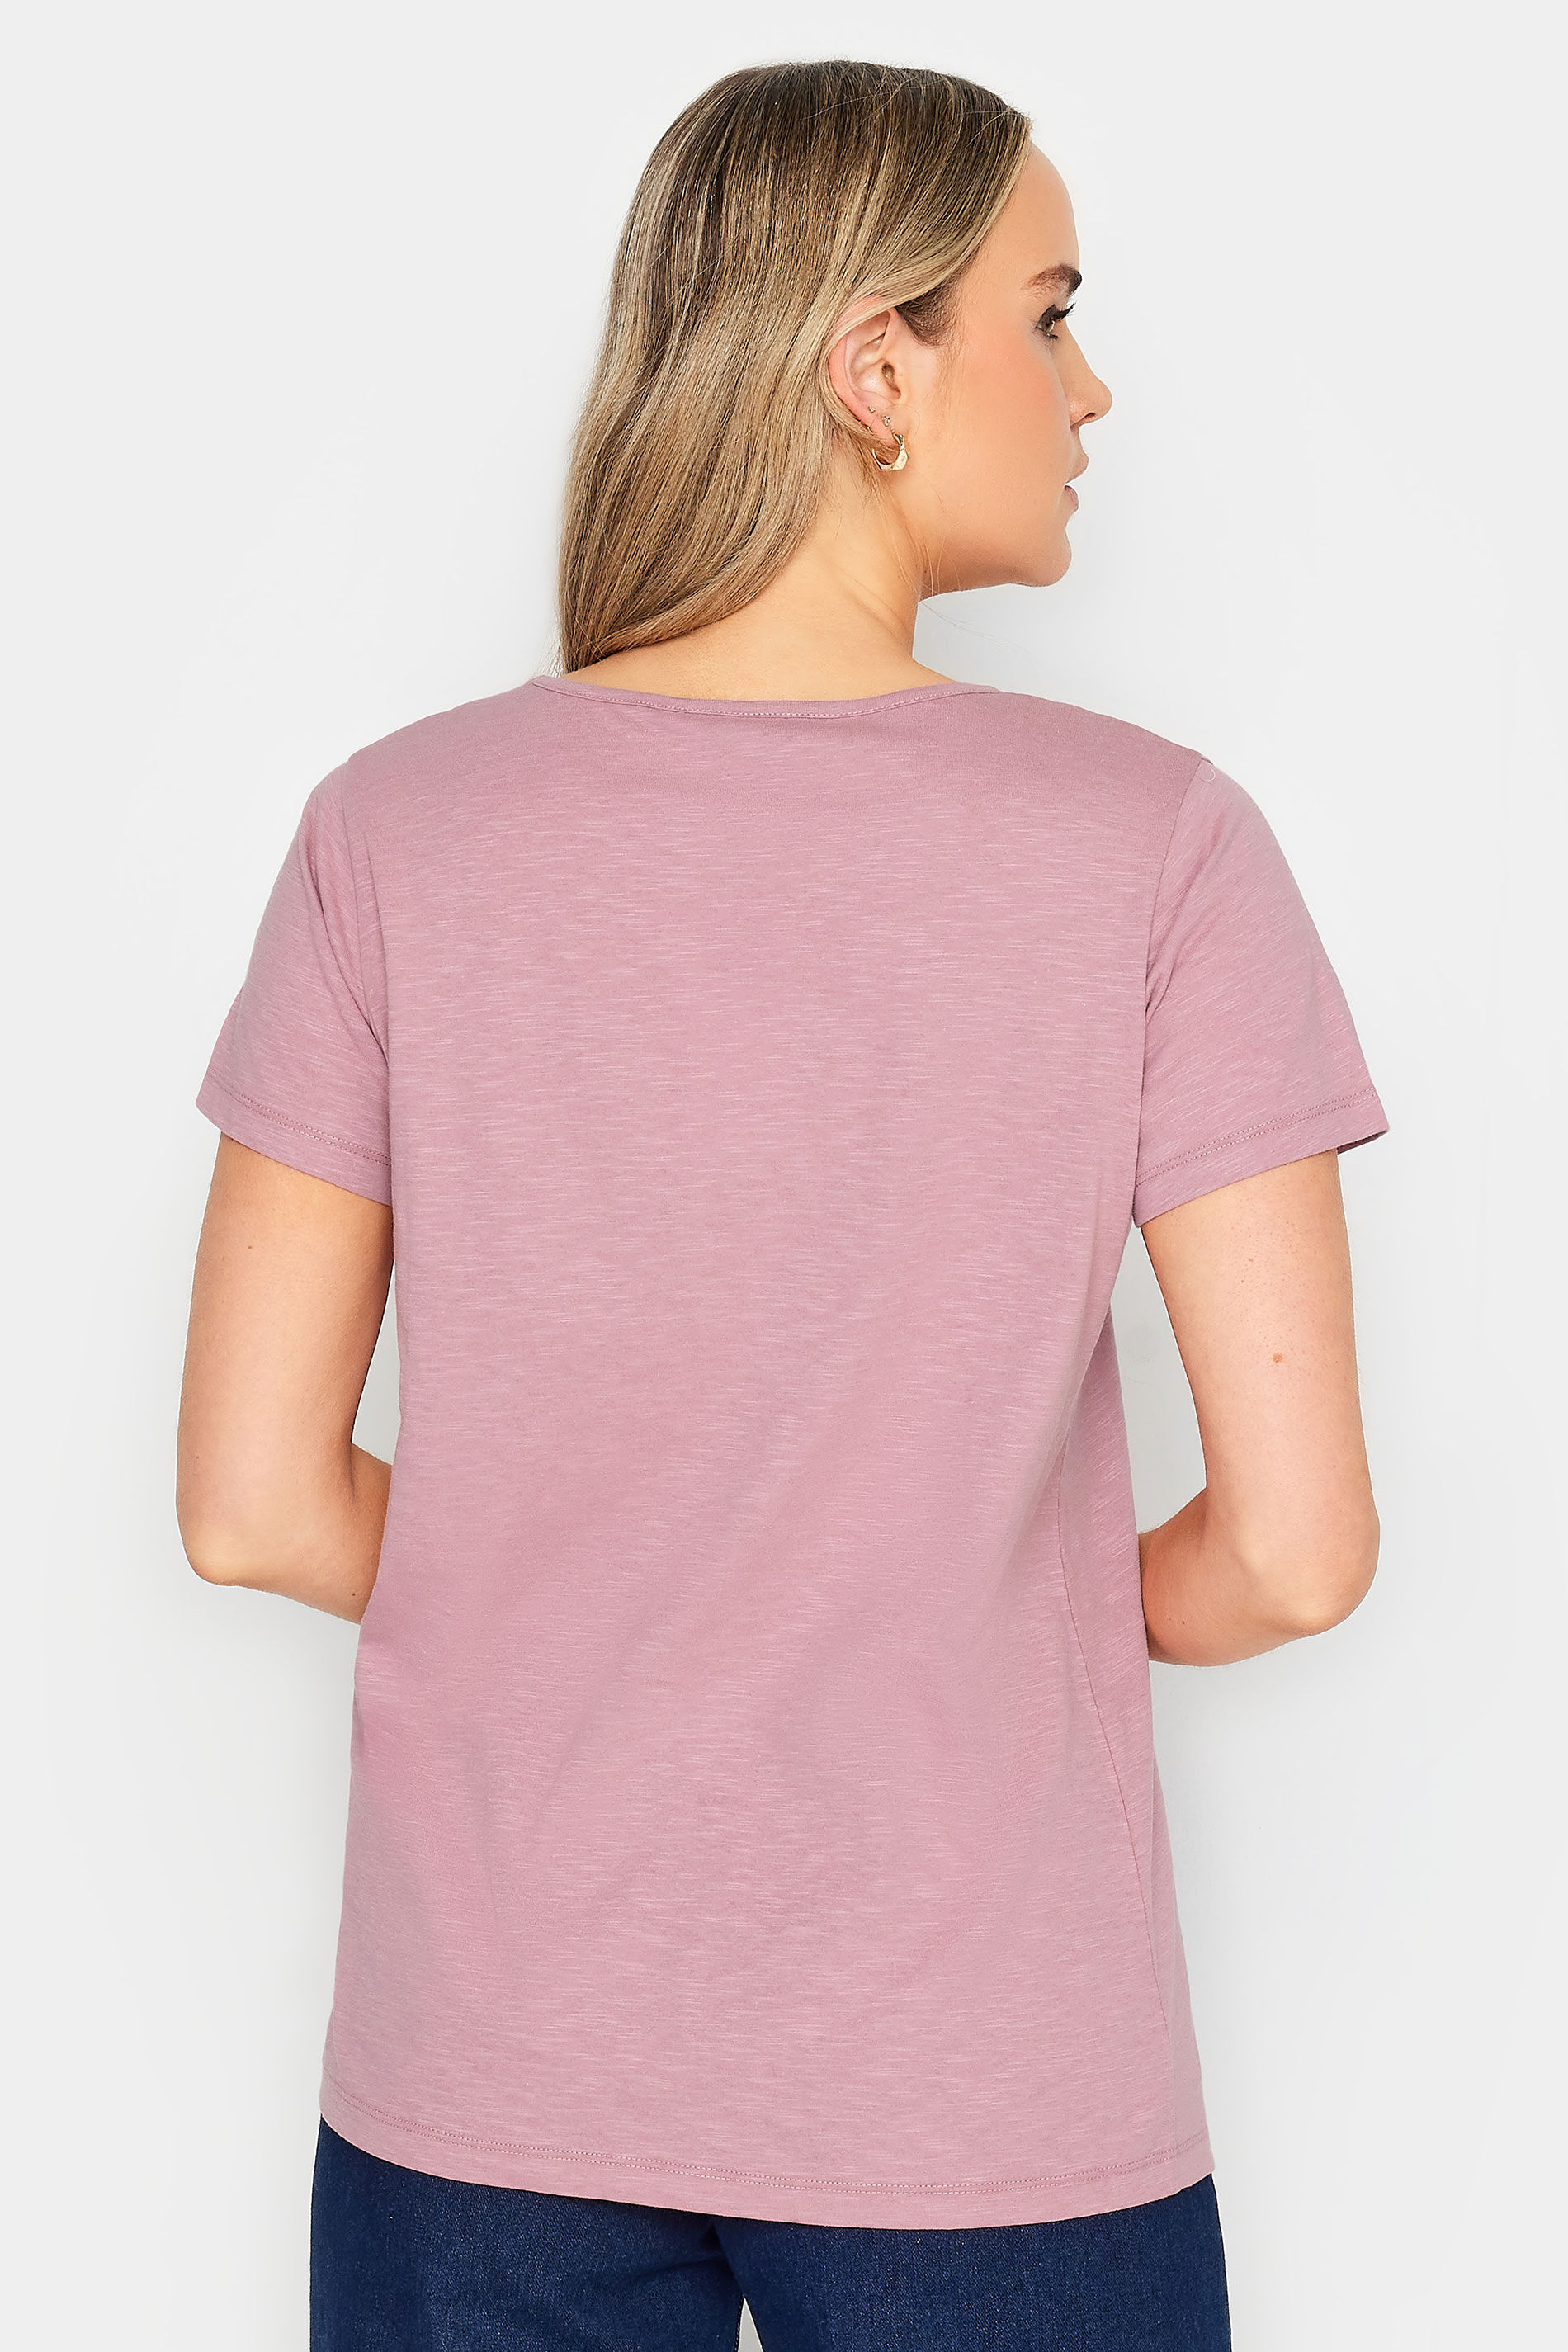 LTS Tall Womens Blush Pink V-Neck T-Shirt | Long Tall Sally 3